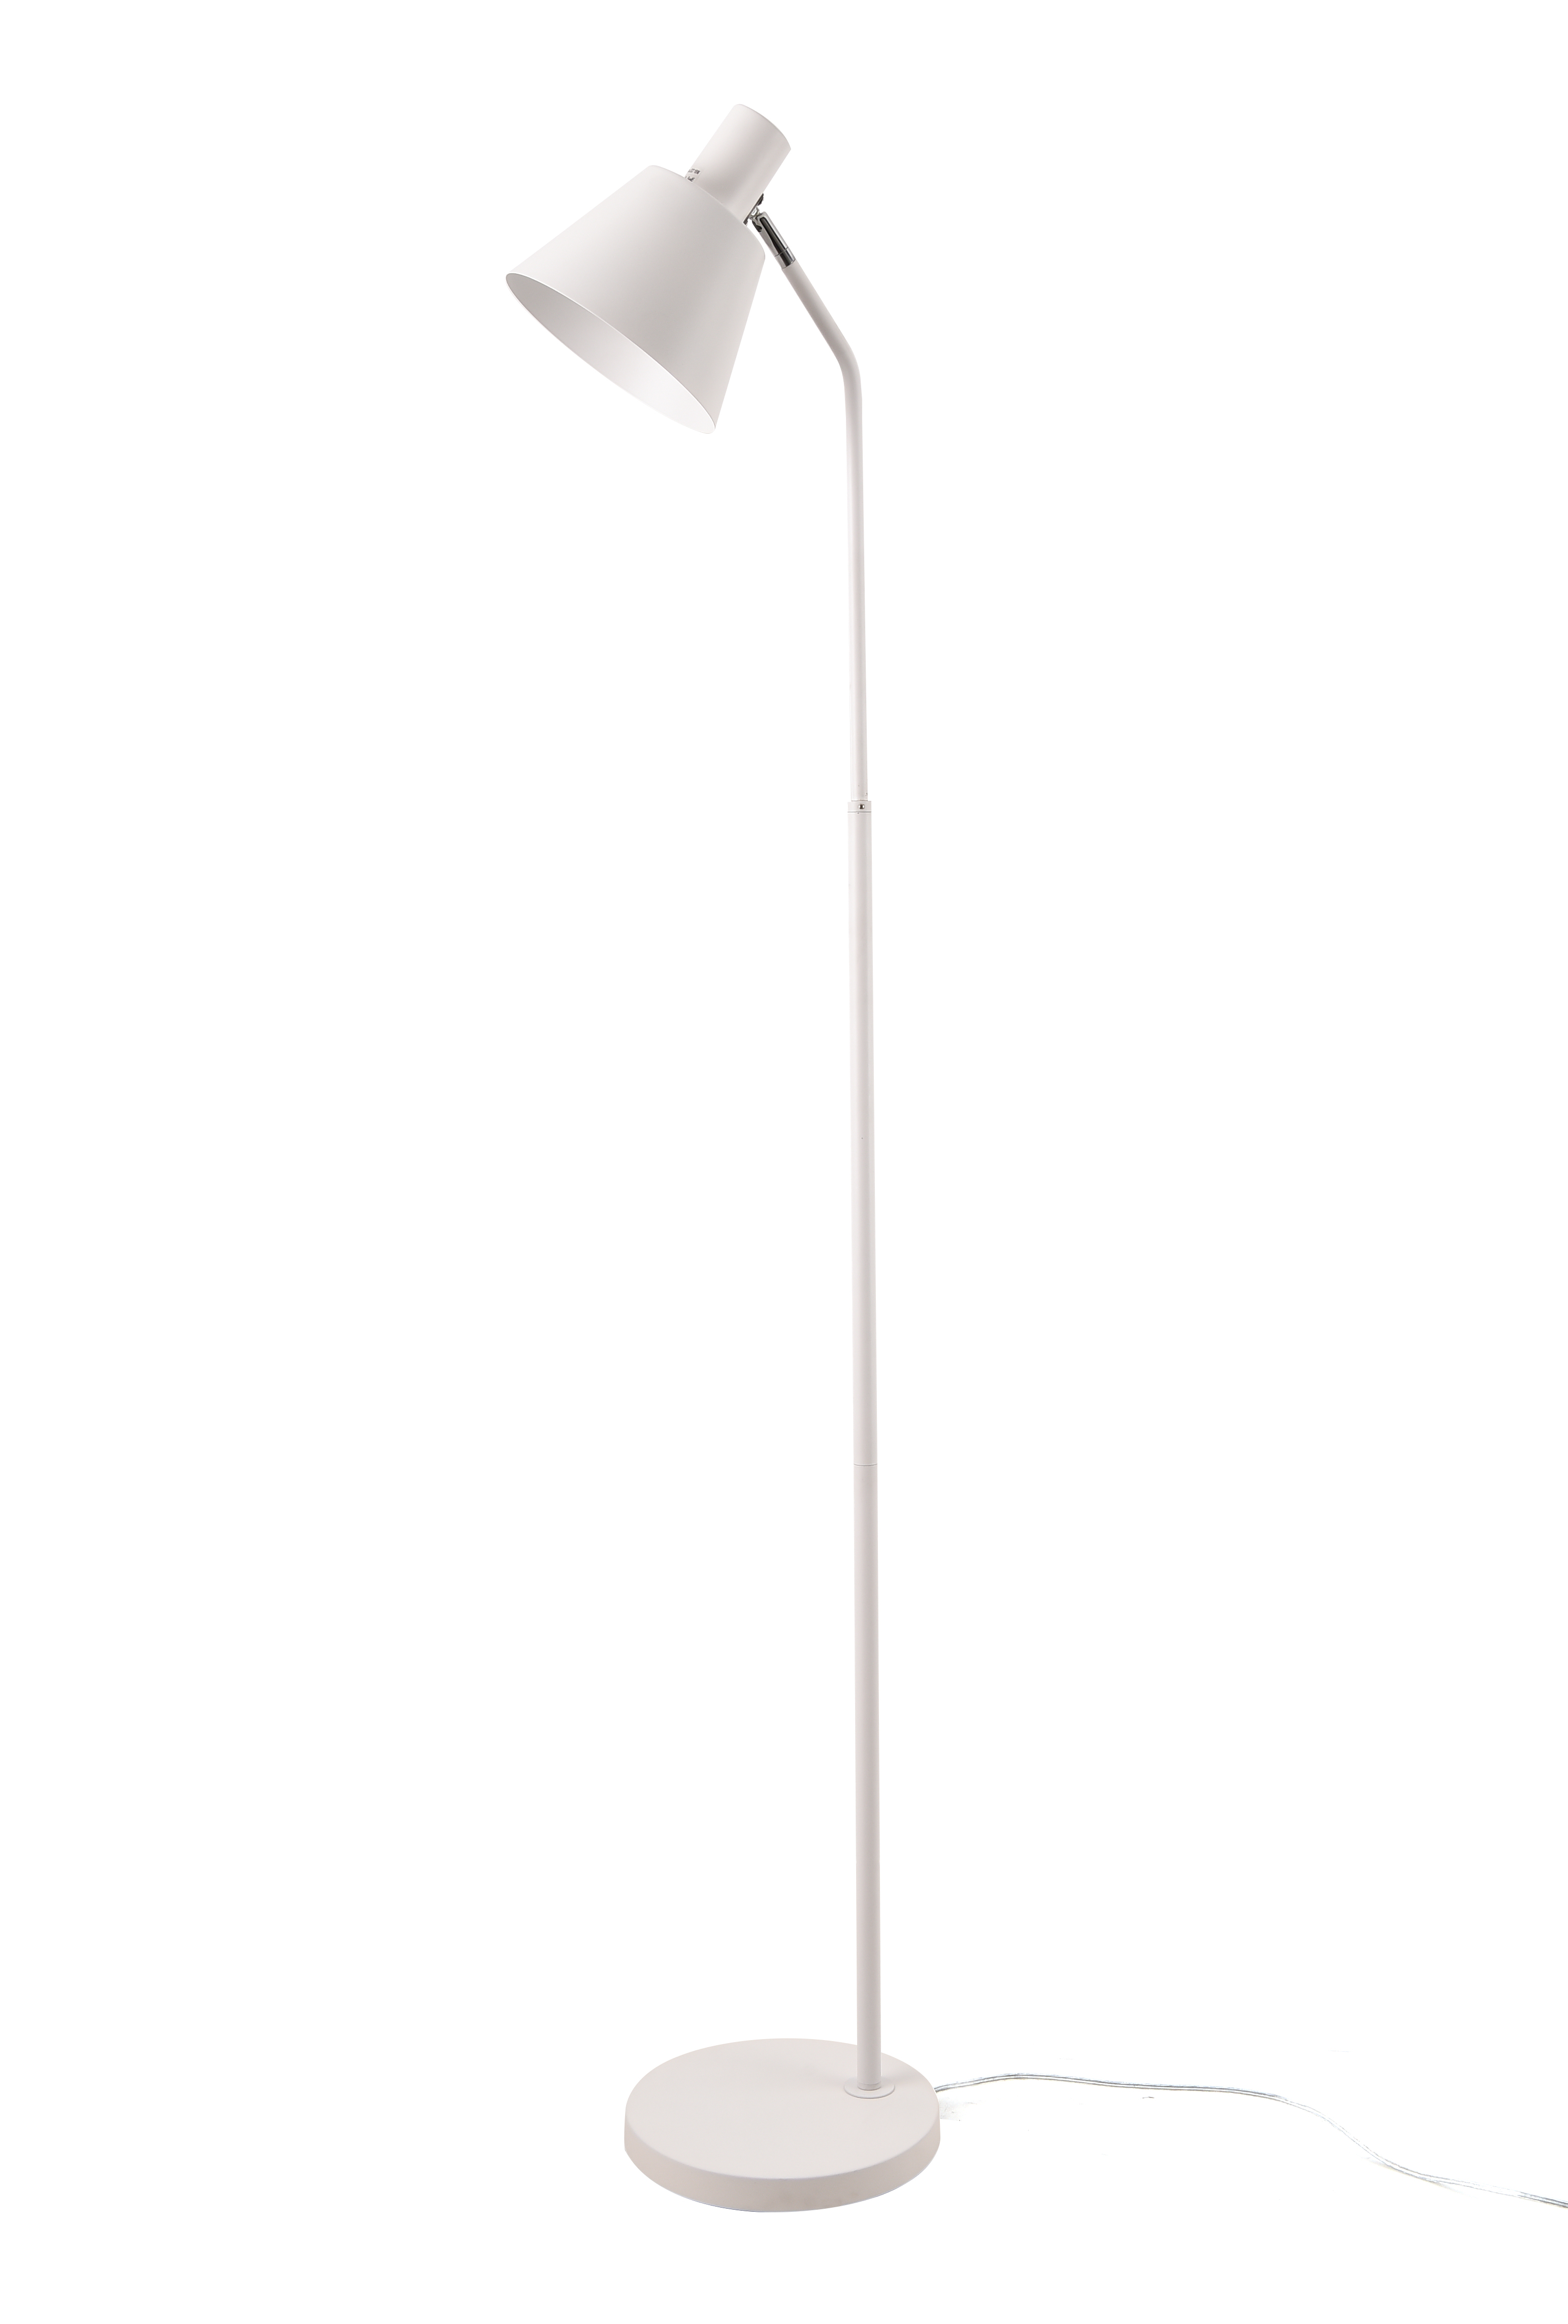 Lattiavalaisin FocusLight JODY - 150cm - 1xE27 18W - Valkoinen